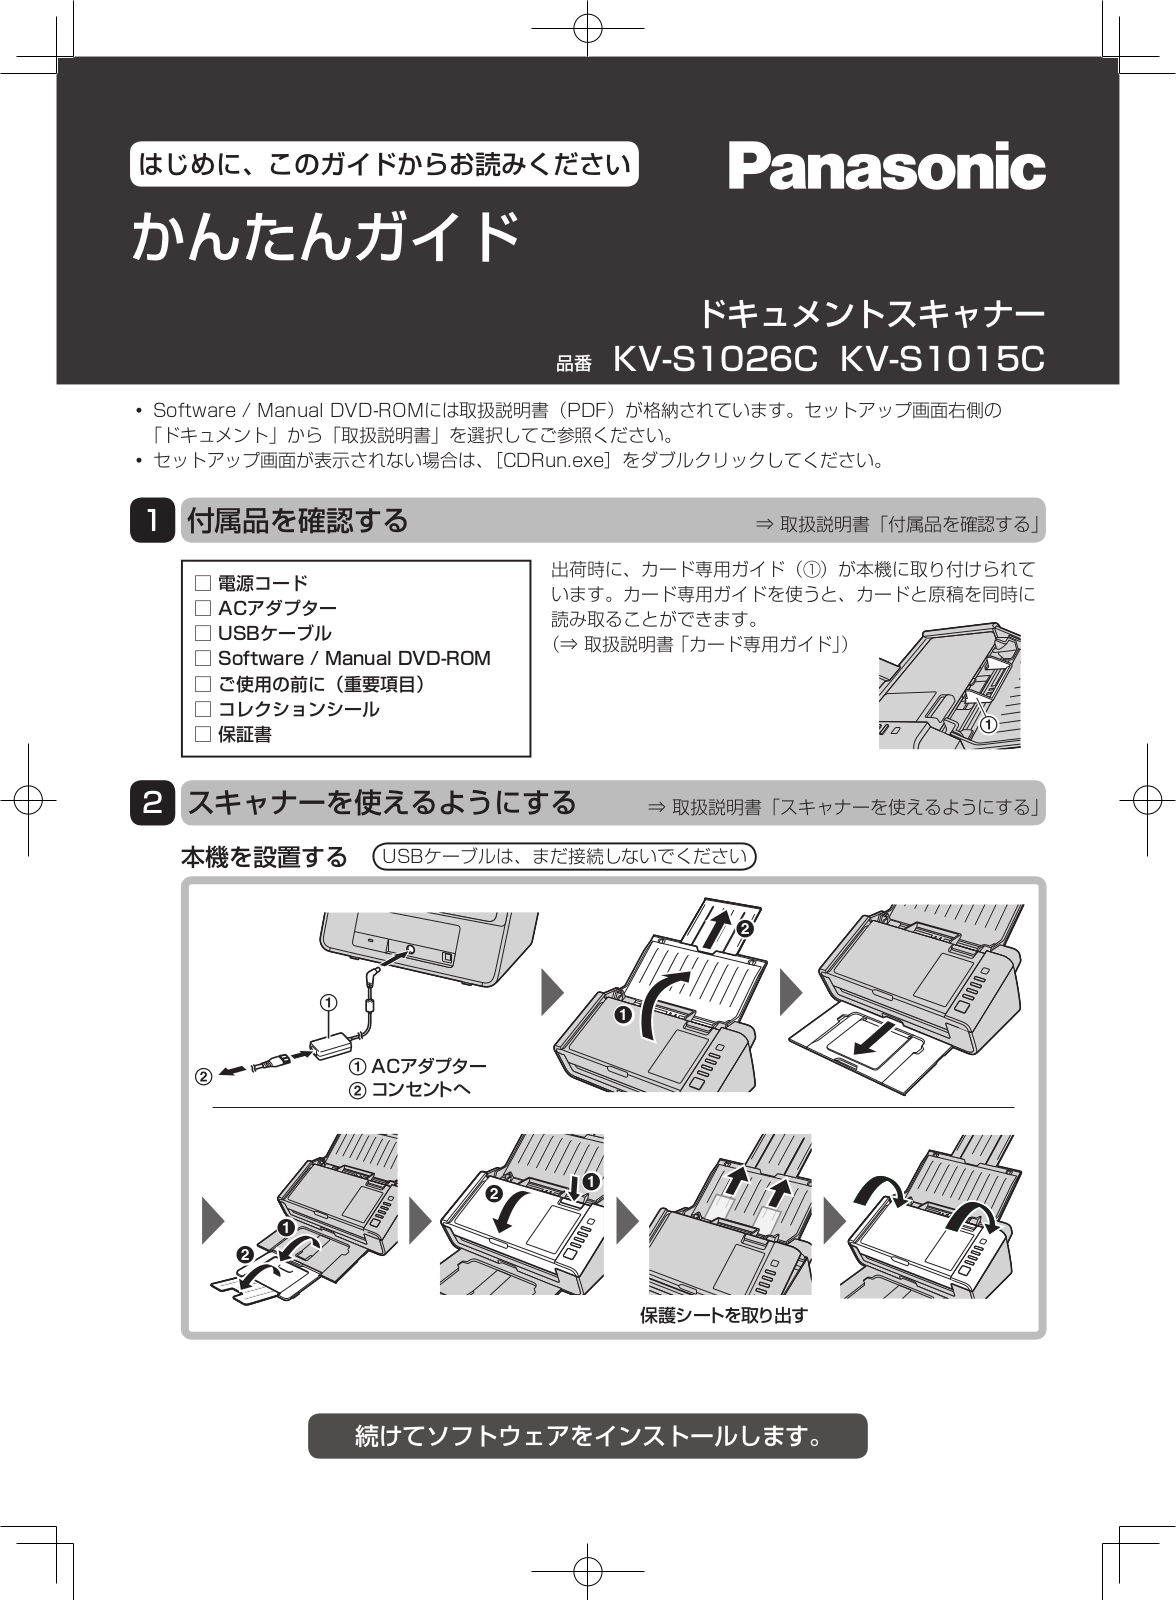 Panasonic KV-S1026C, KV-S1015C Instructions Manual